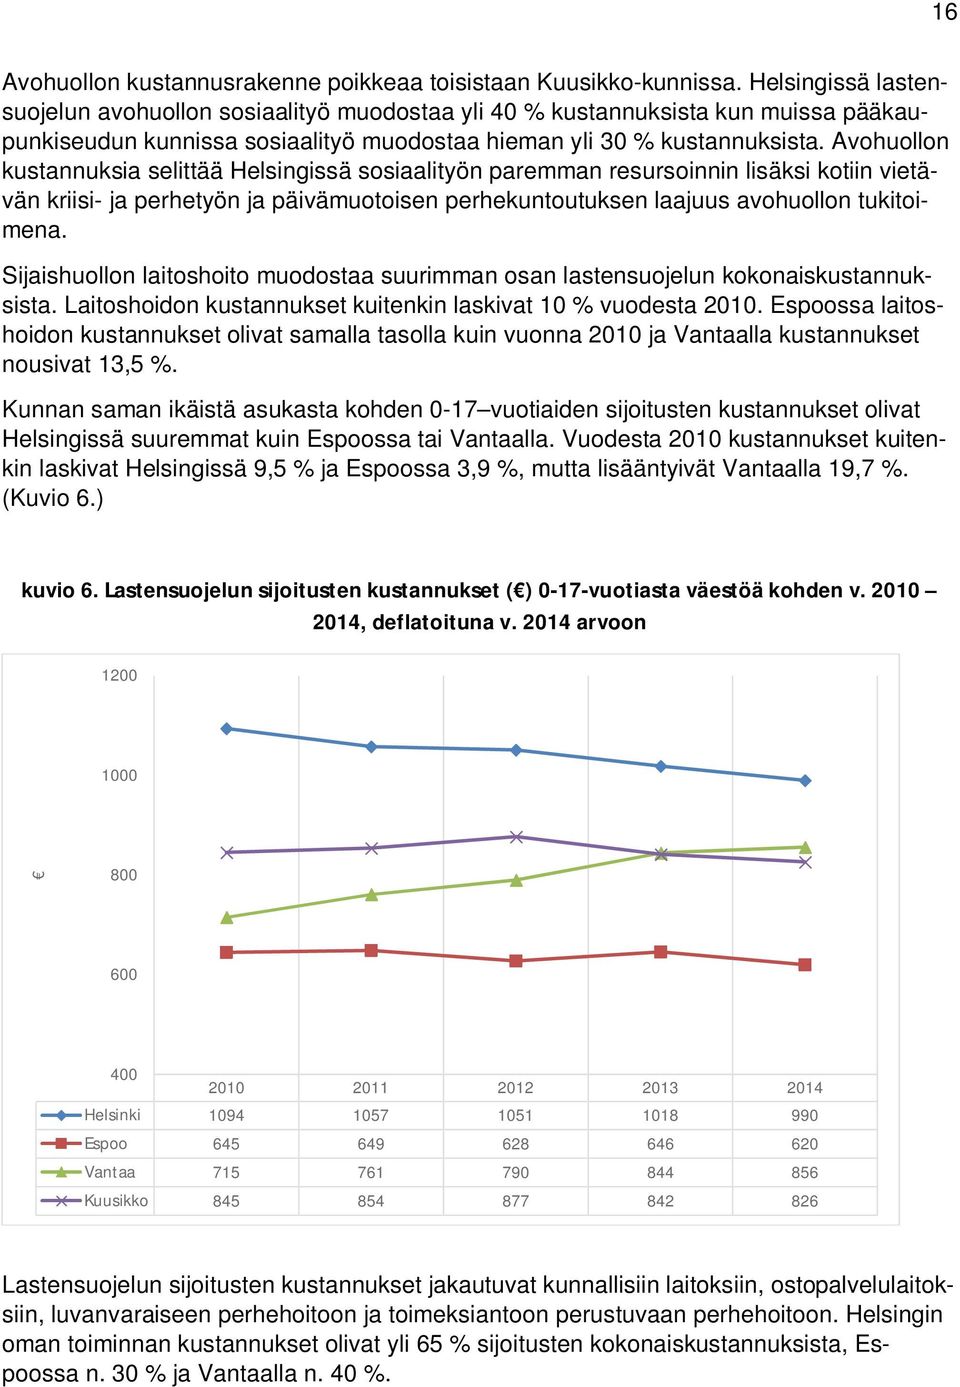 Avohuollon kustannuksia selittää Helsingissä sosiaalityön paremman resursoinnin lisäksi kotiin vietävän kriisi- ja perhetyön ja päivämuotoisen perhekuntoutuksen laajuus avohuollon tukitoimena.